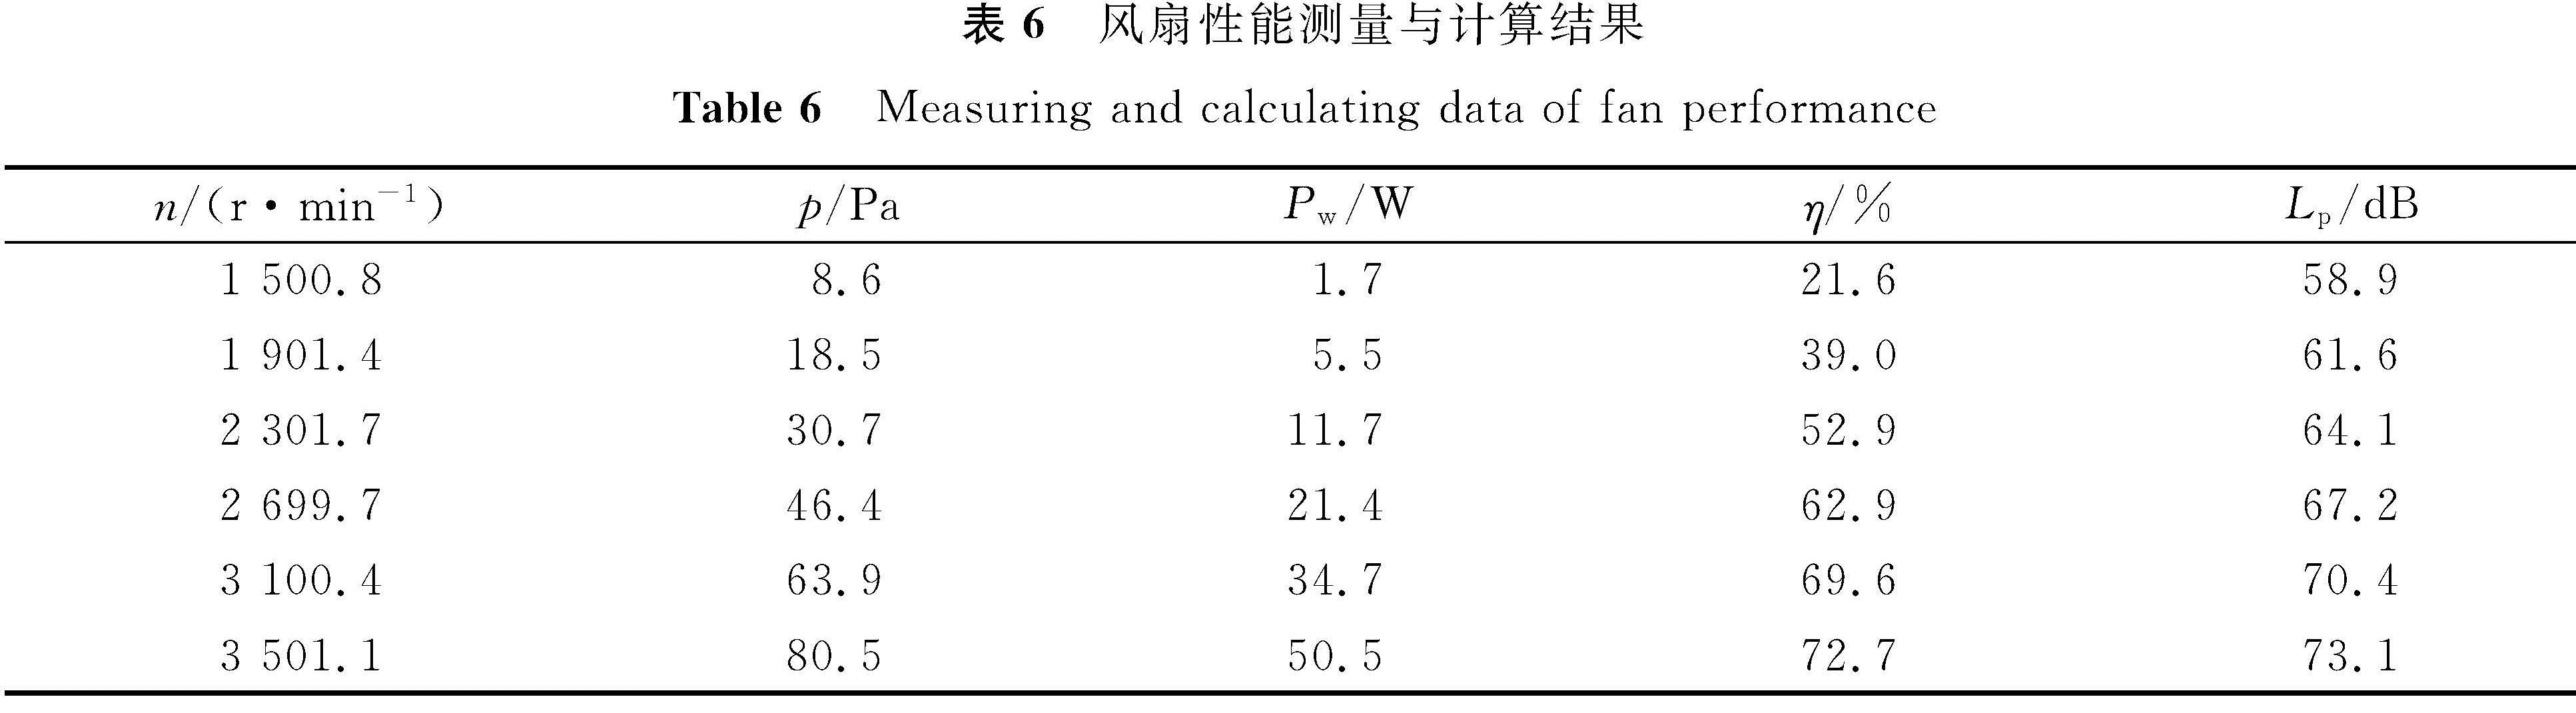 表6 风扇性能测量与计算结果<br/>Table 6 Measuring and calculating data of fan performance